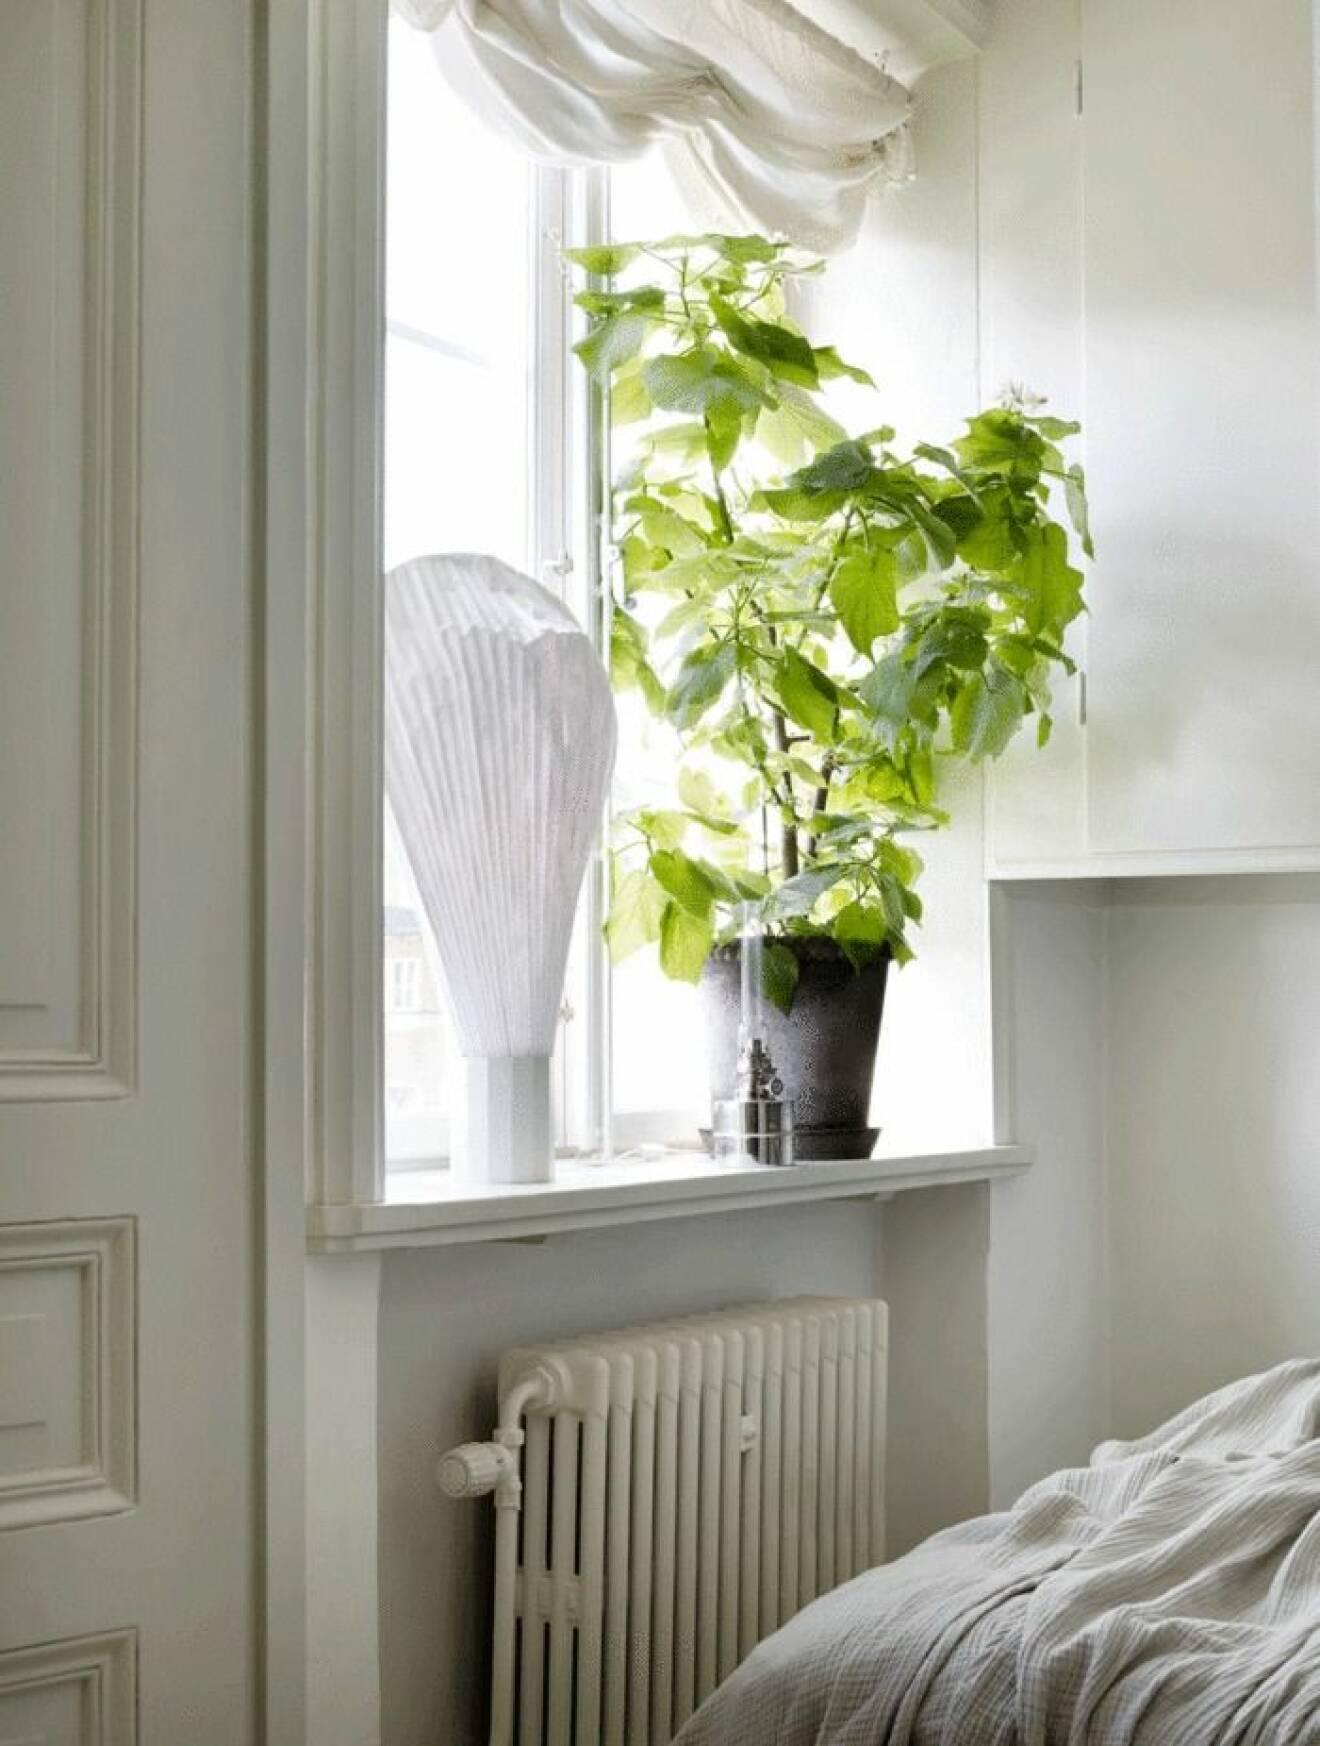 Växter ger ett helt nytt ljus i hemmet